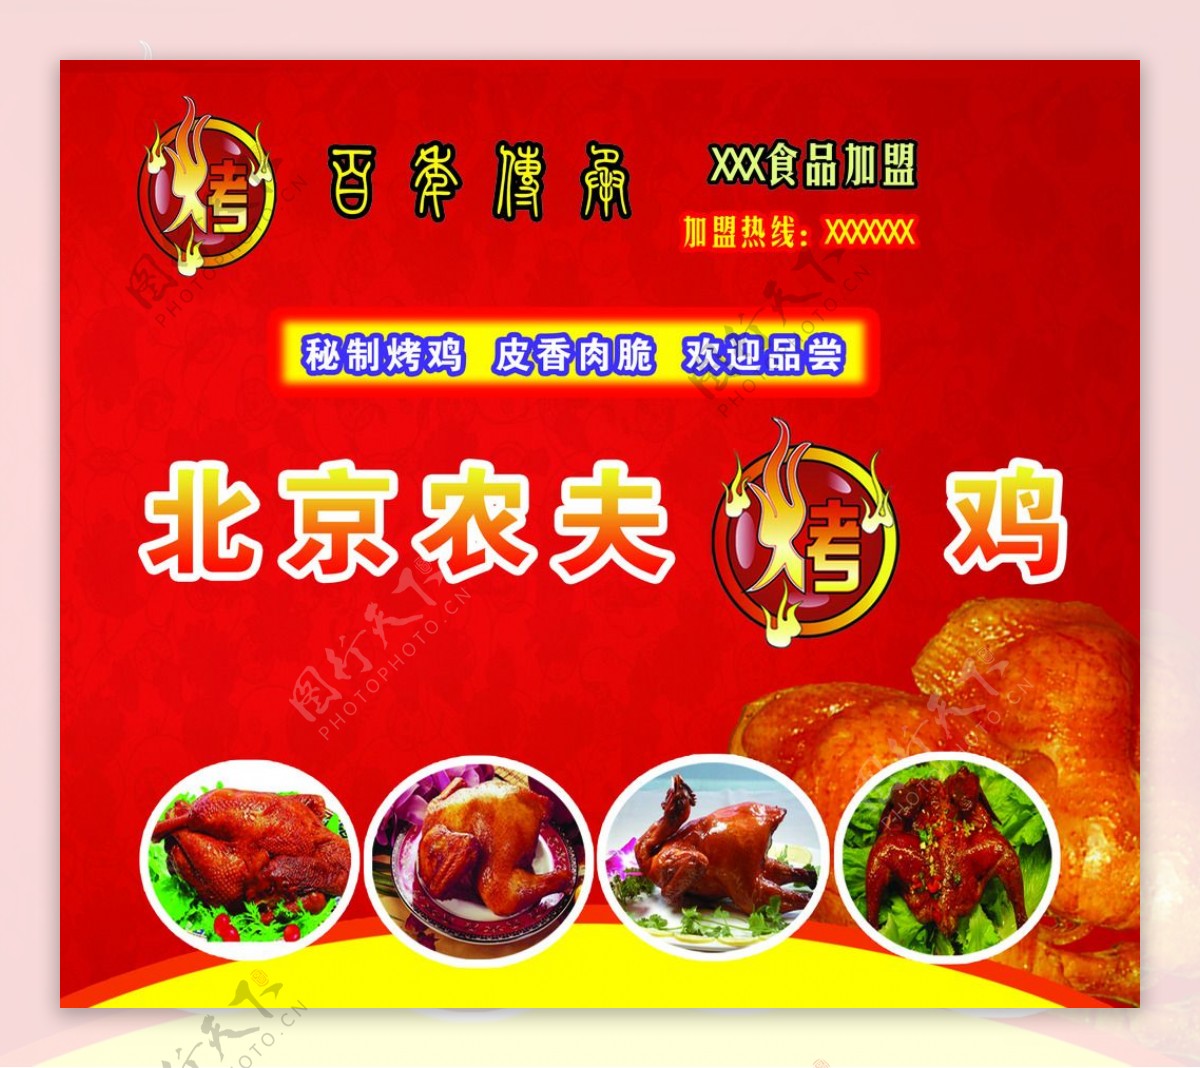 北京农夫烤鸡图片